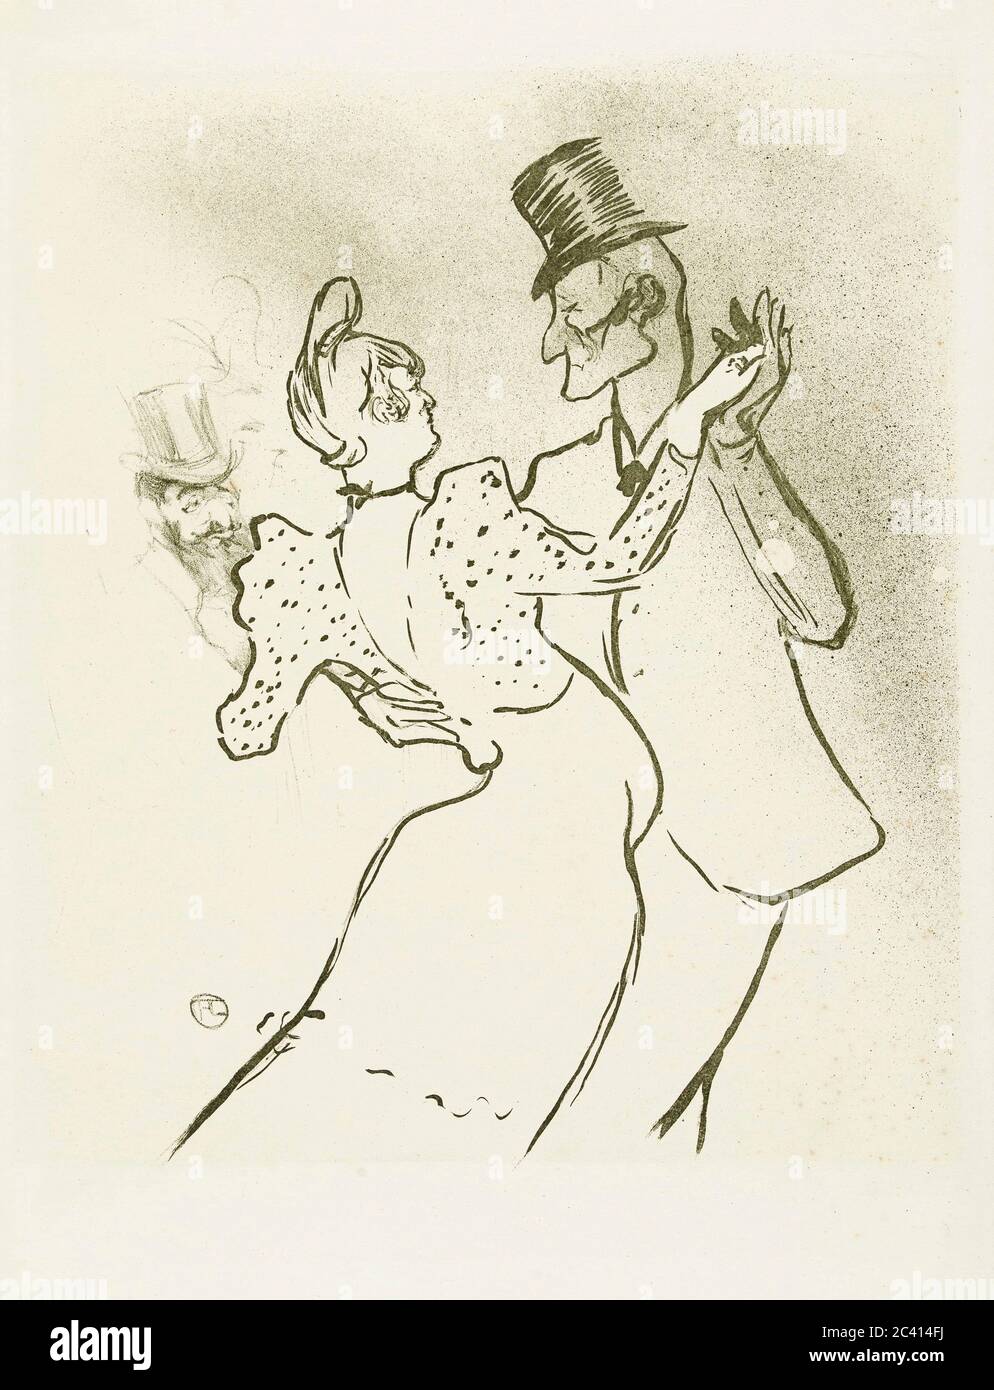 La Goulue und Valentin la Desossee. Plakat von Henri de Toulouse-Lautrec. Henri de Toulouse-Lautrec, französischer Künstler, 1864-1901. La Goulue war der Künstlername der Moulin Rouge Tänzerin Louise Weber. Valentin la Desossee war der Künstlername von Jaques Renaudin, der vermutlich einen ganztägigen Job zurückhielt, aber abends im Moulin Rouge tanzte. Stockfoto